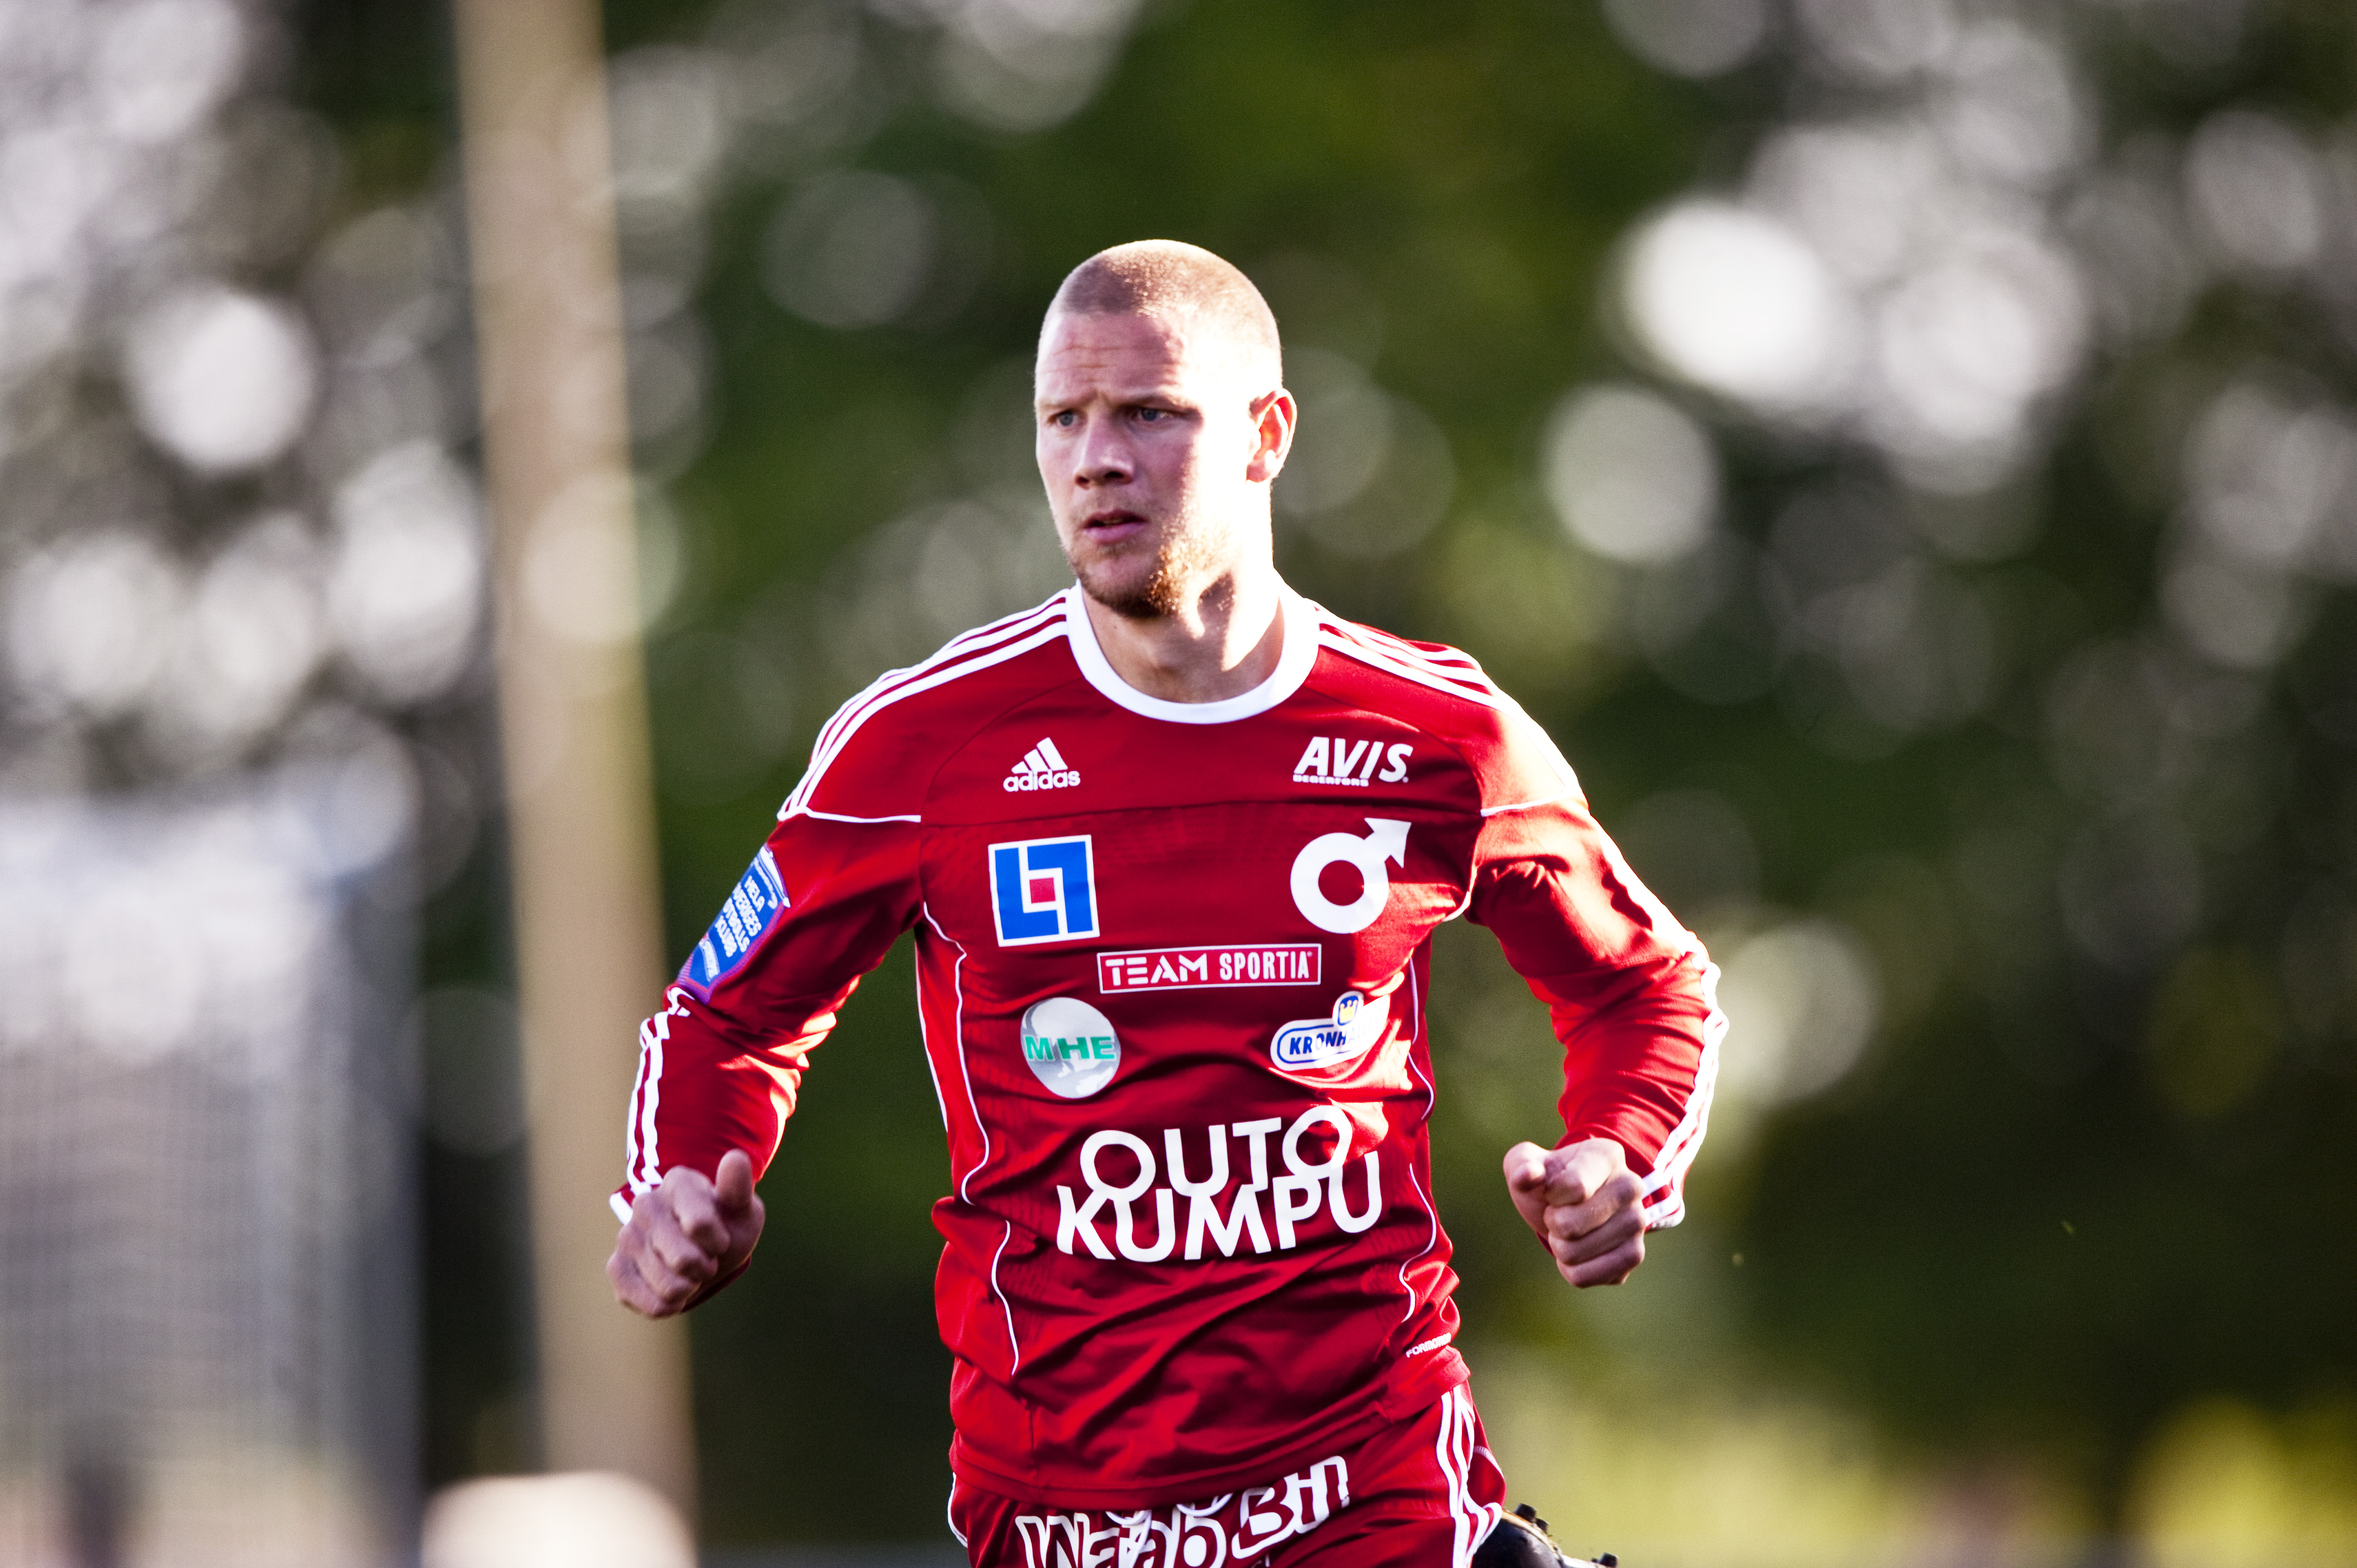 Peter Samuelsson, anfallare. Betyg: 3/5. En utpräglad striker som gjort 32 mål under två superettansäsonger i Degerfors. En fullgod ersättare till Haddad om denne inte håller efter långtidsskadan.